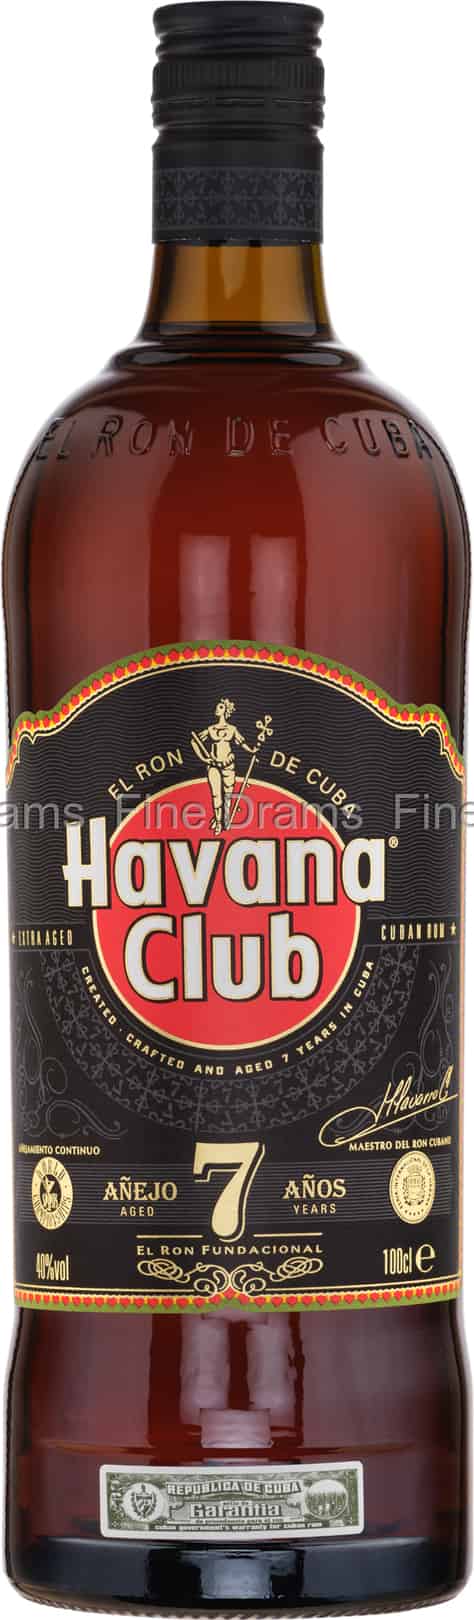 Havana Club 7 Year Old Rum (1 Liter)